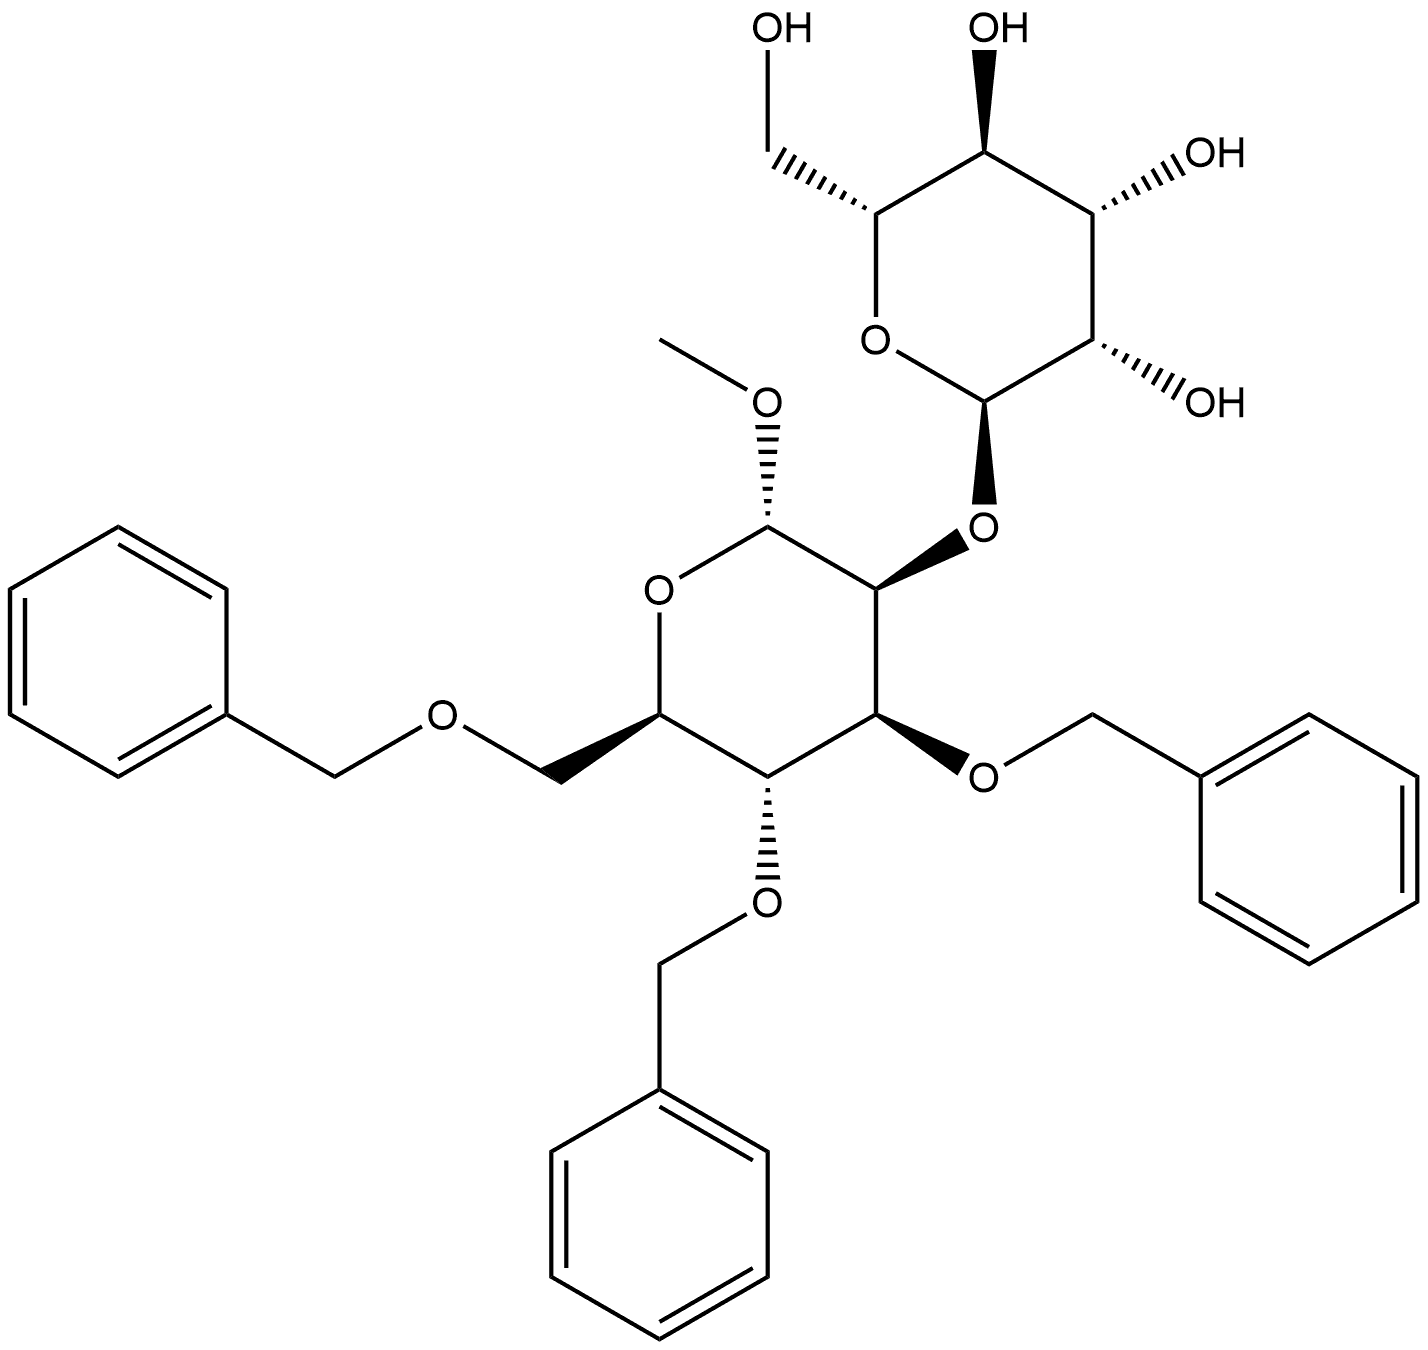 α-D-Mannopyranoside, methyl 2-O-α-D-mannopyranosyl-3,4,6-tris-O-(phenylmethyl)-